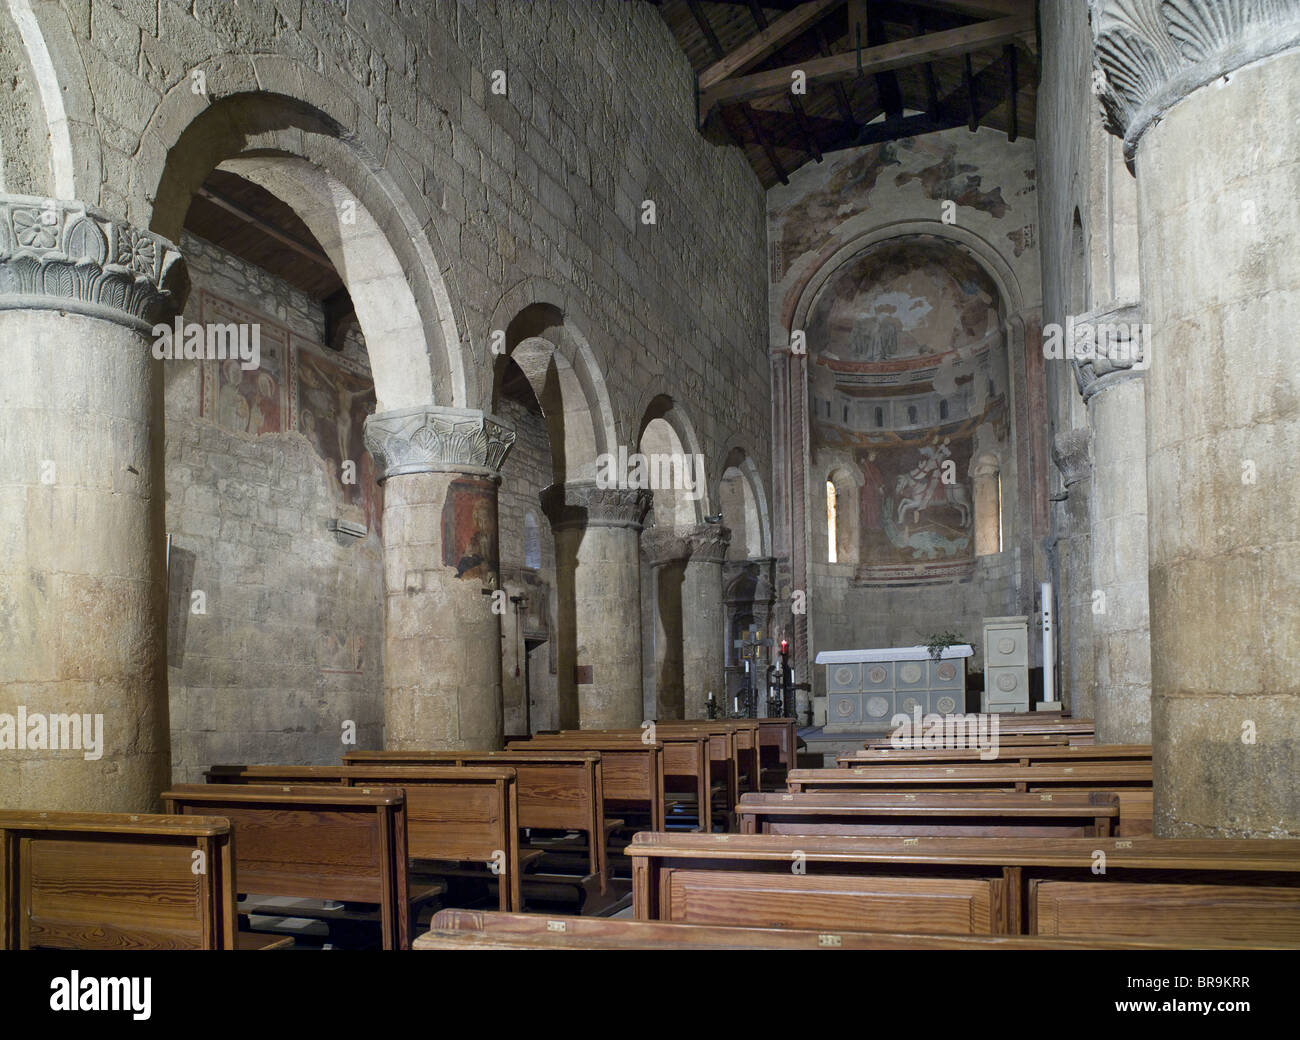 Wachtürmen, Italien. 12. Jahrhundert Kirche von San Giorgio. Inneren Langhaus und Apsis, mit romanischen Säulen und runden Spitze Bögen. Stockfoto